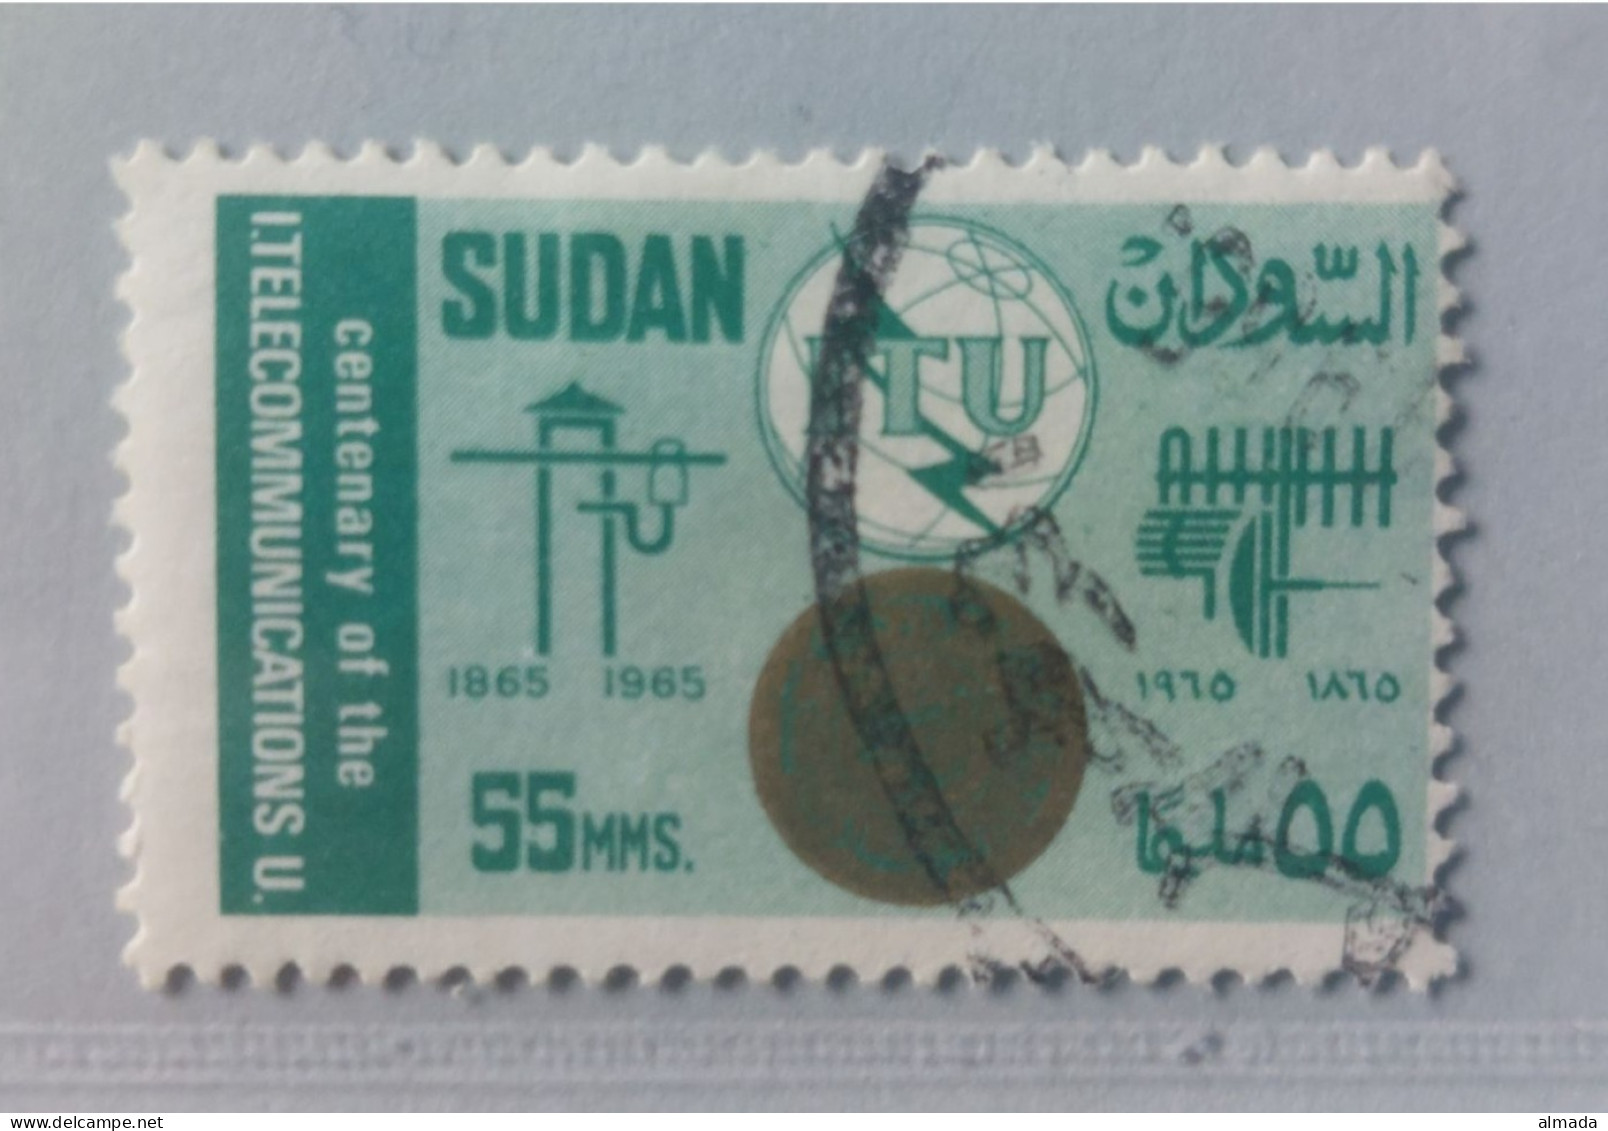 Sudan 1965: Michel 211 Used, Gestempelt - Soudan (1954-...)